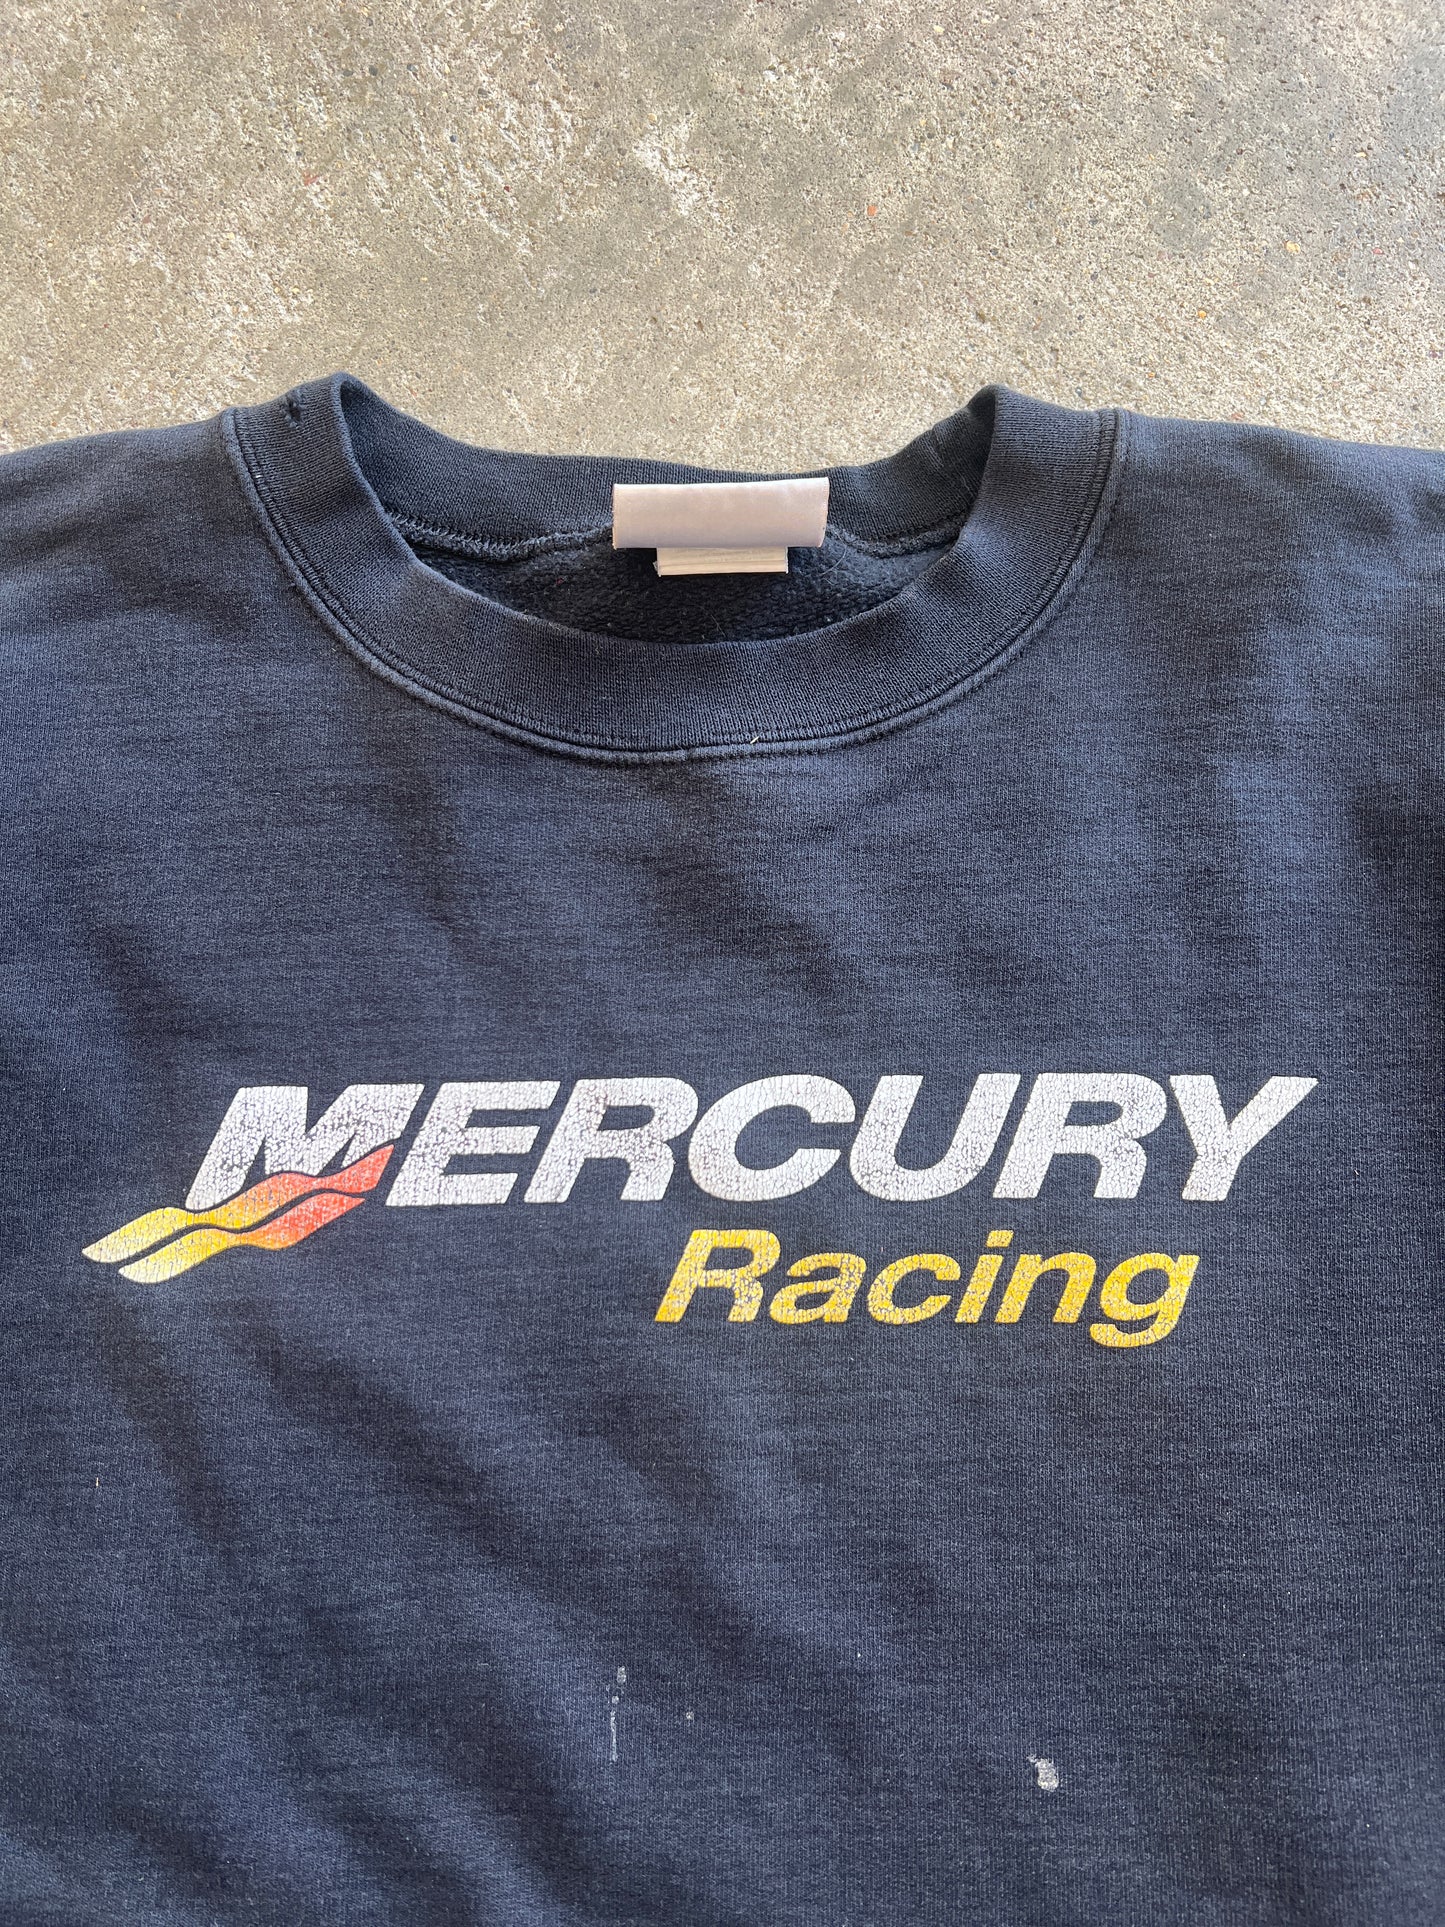 Vintage Mercury Racing Crew - XXL